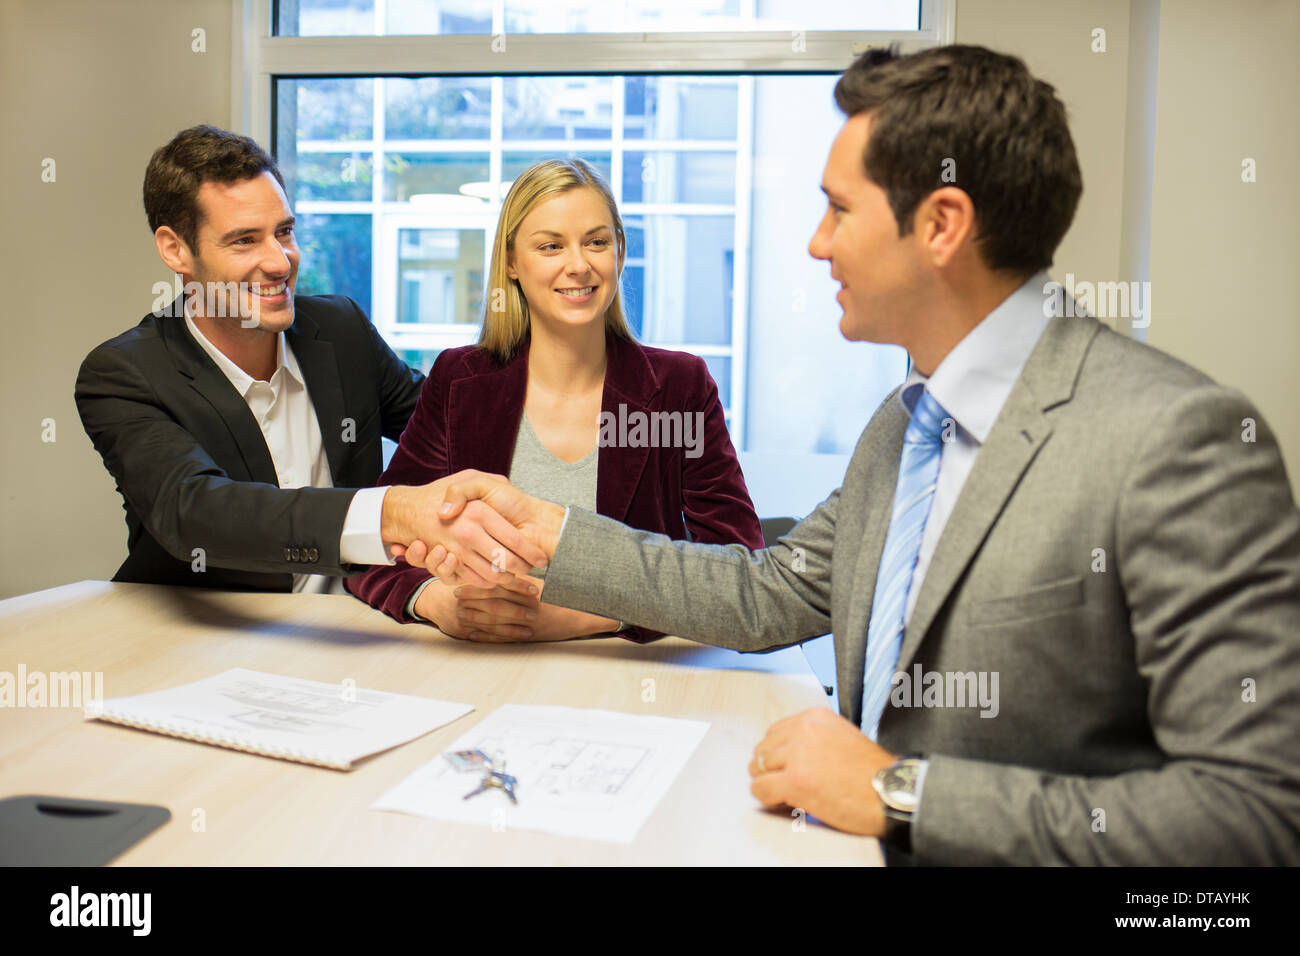 Rencontre avec couple conseiller financier, handshake Banque D'Images